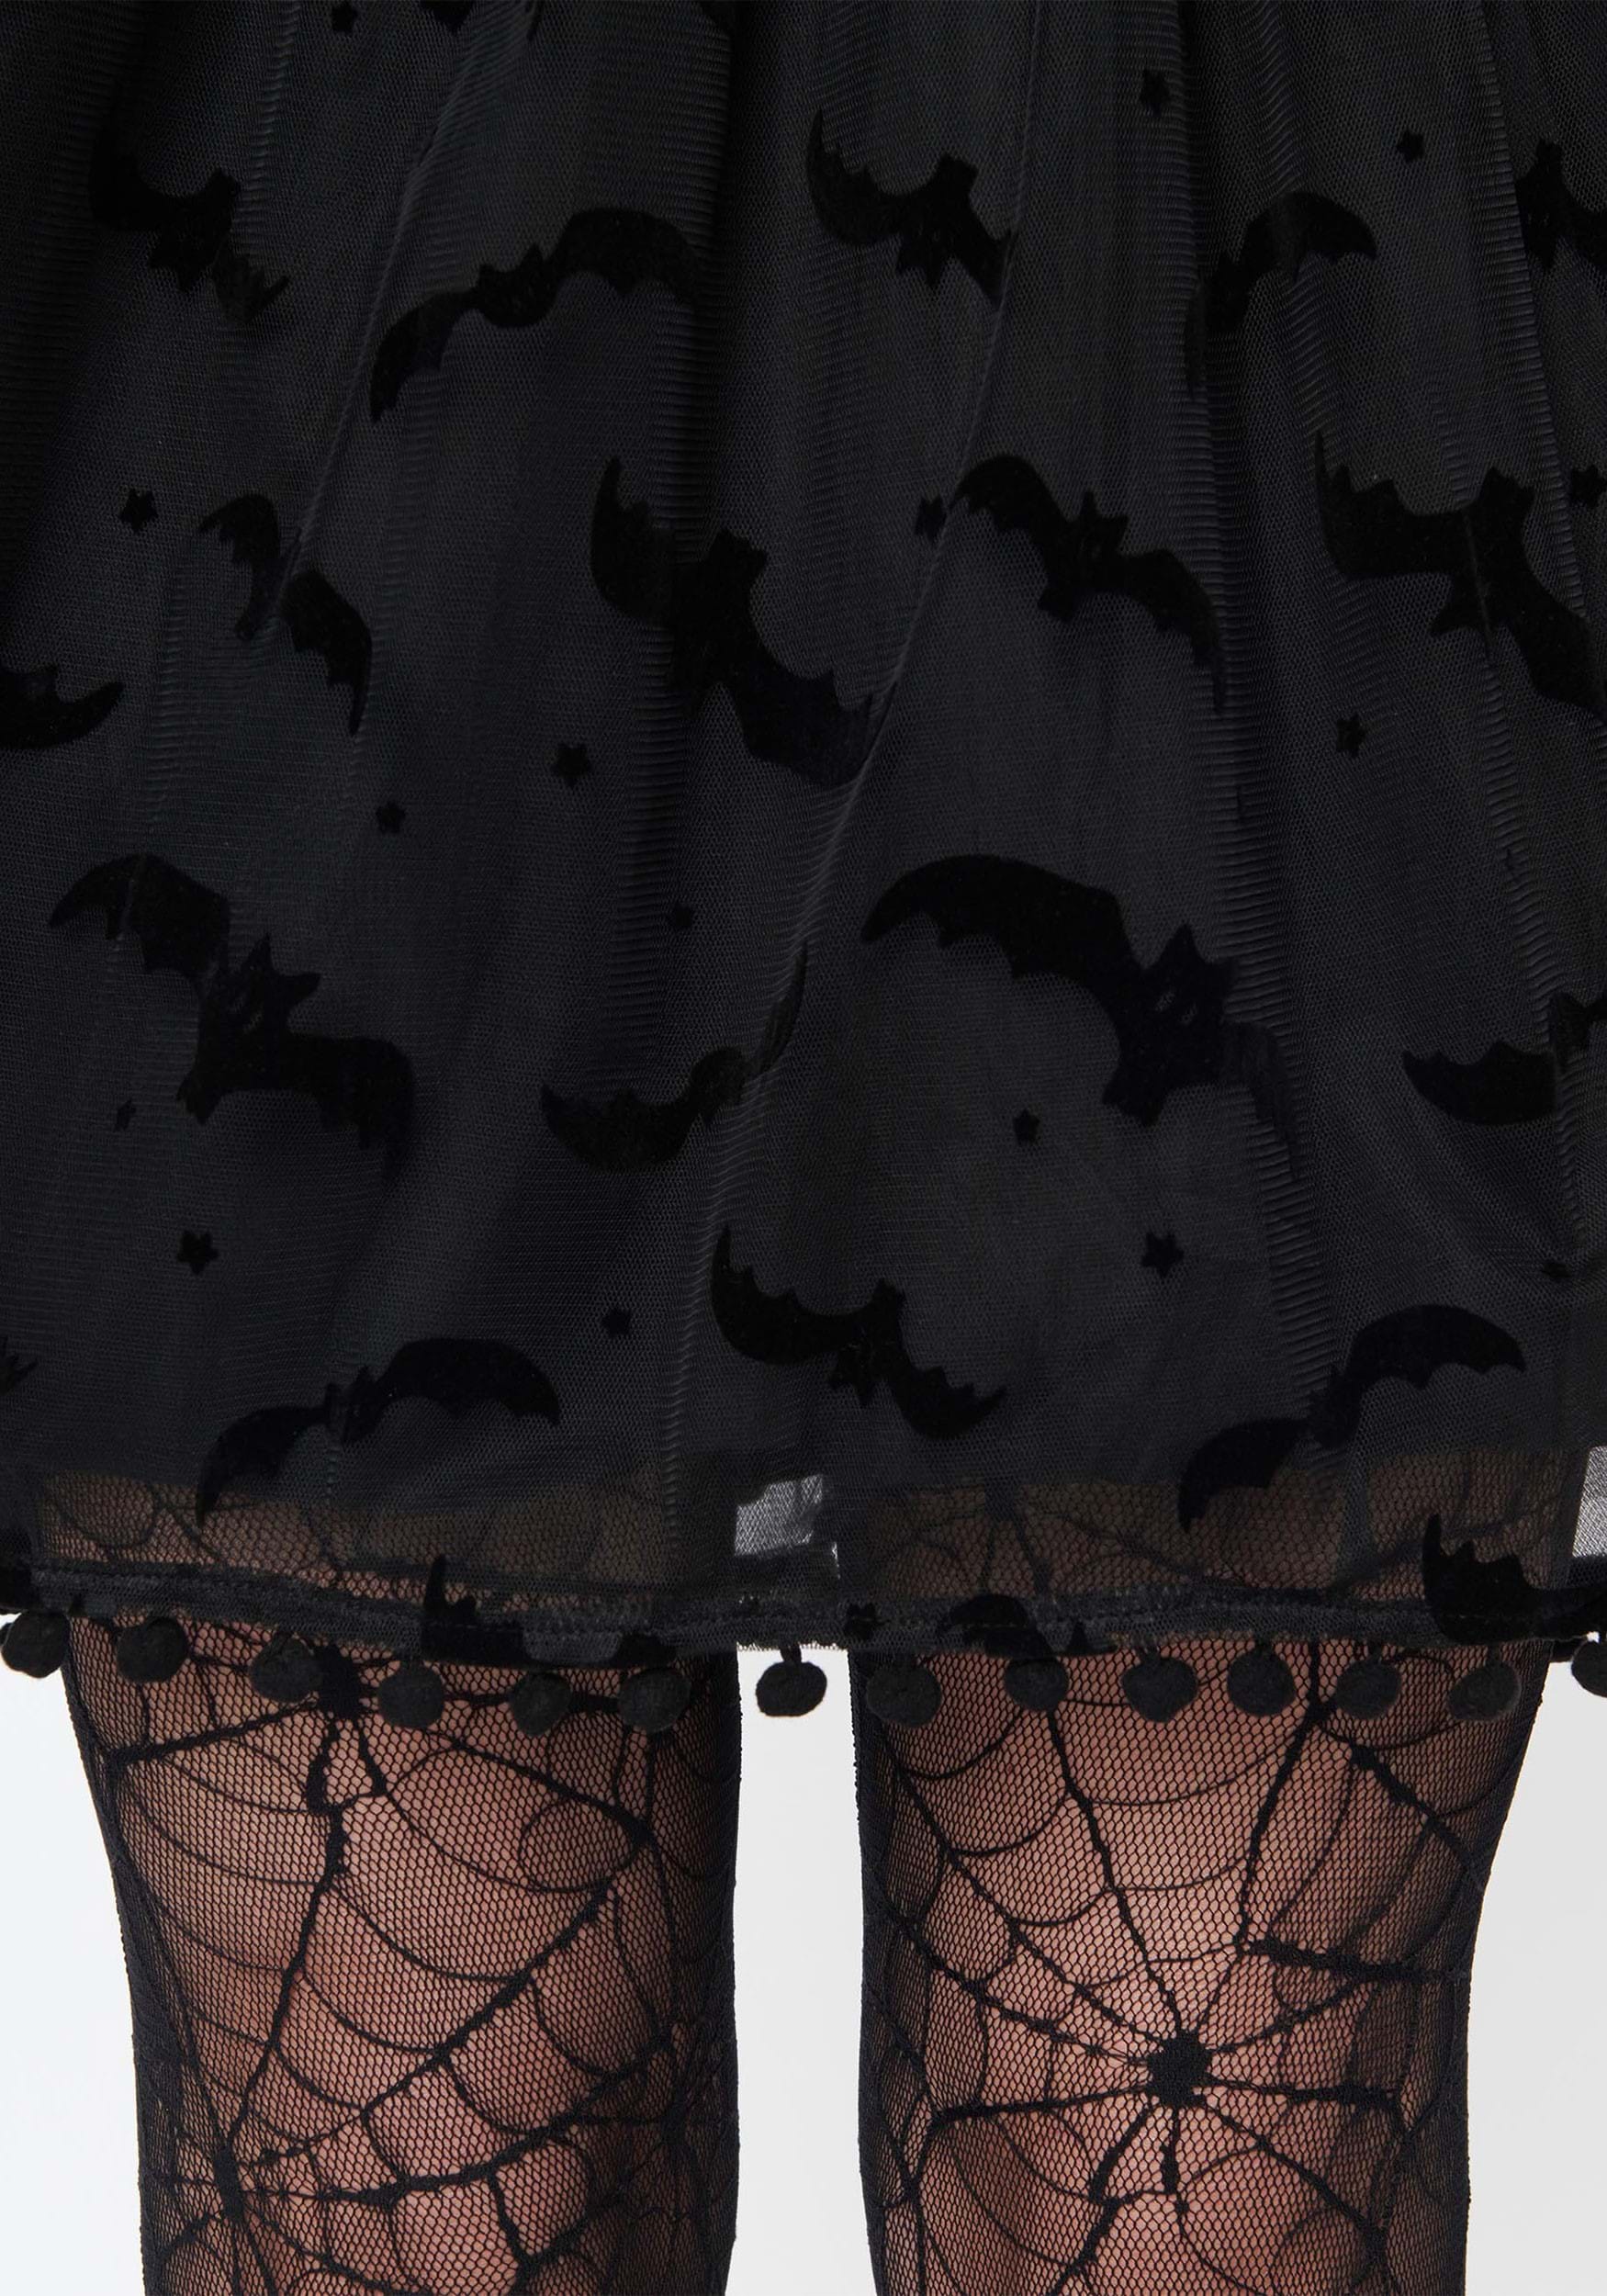 Women's Unique Vintage Bat Flock Print Babydoll Dress